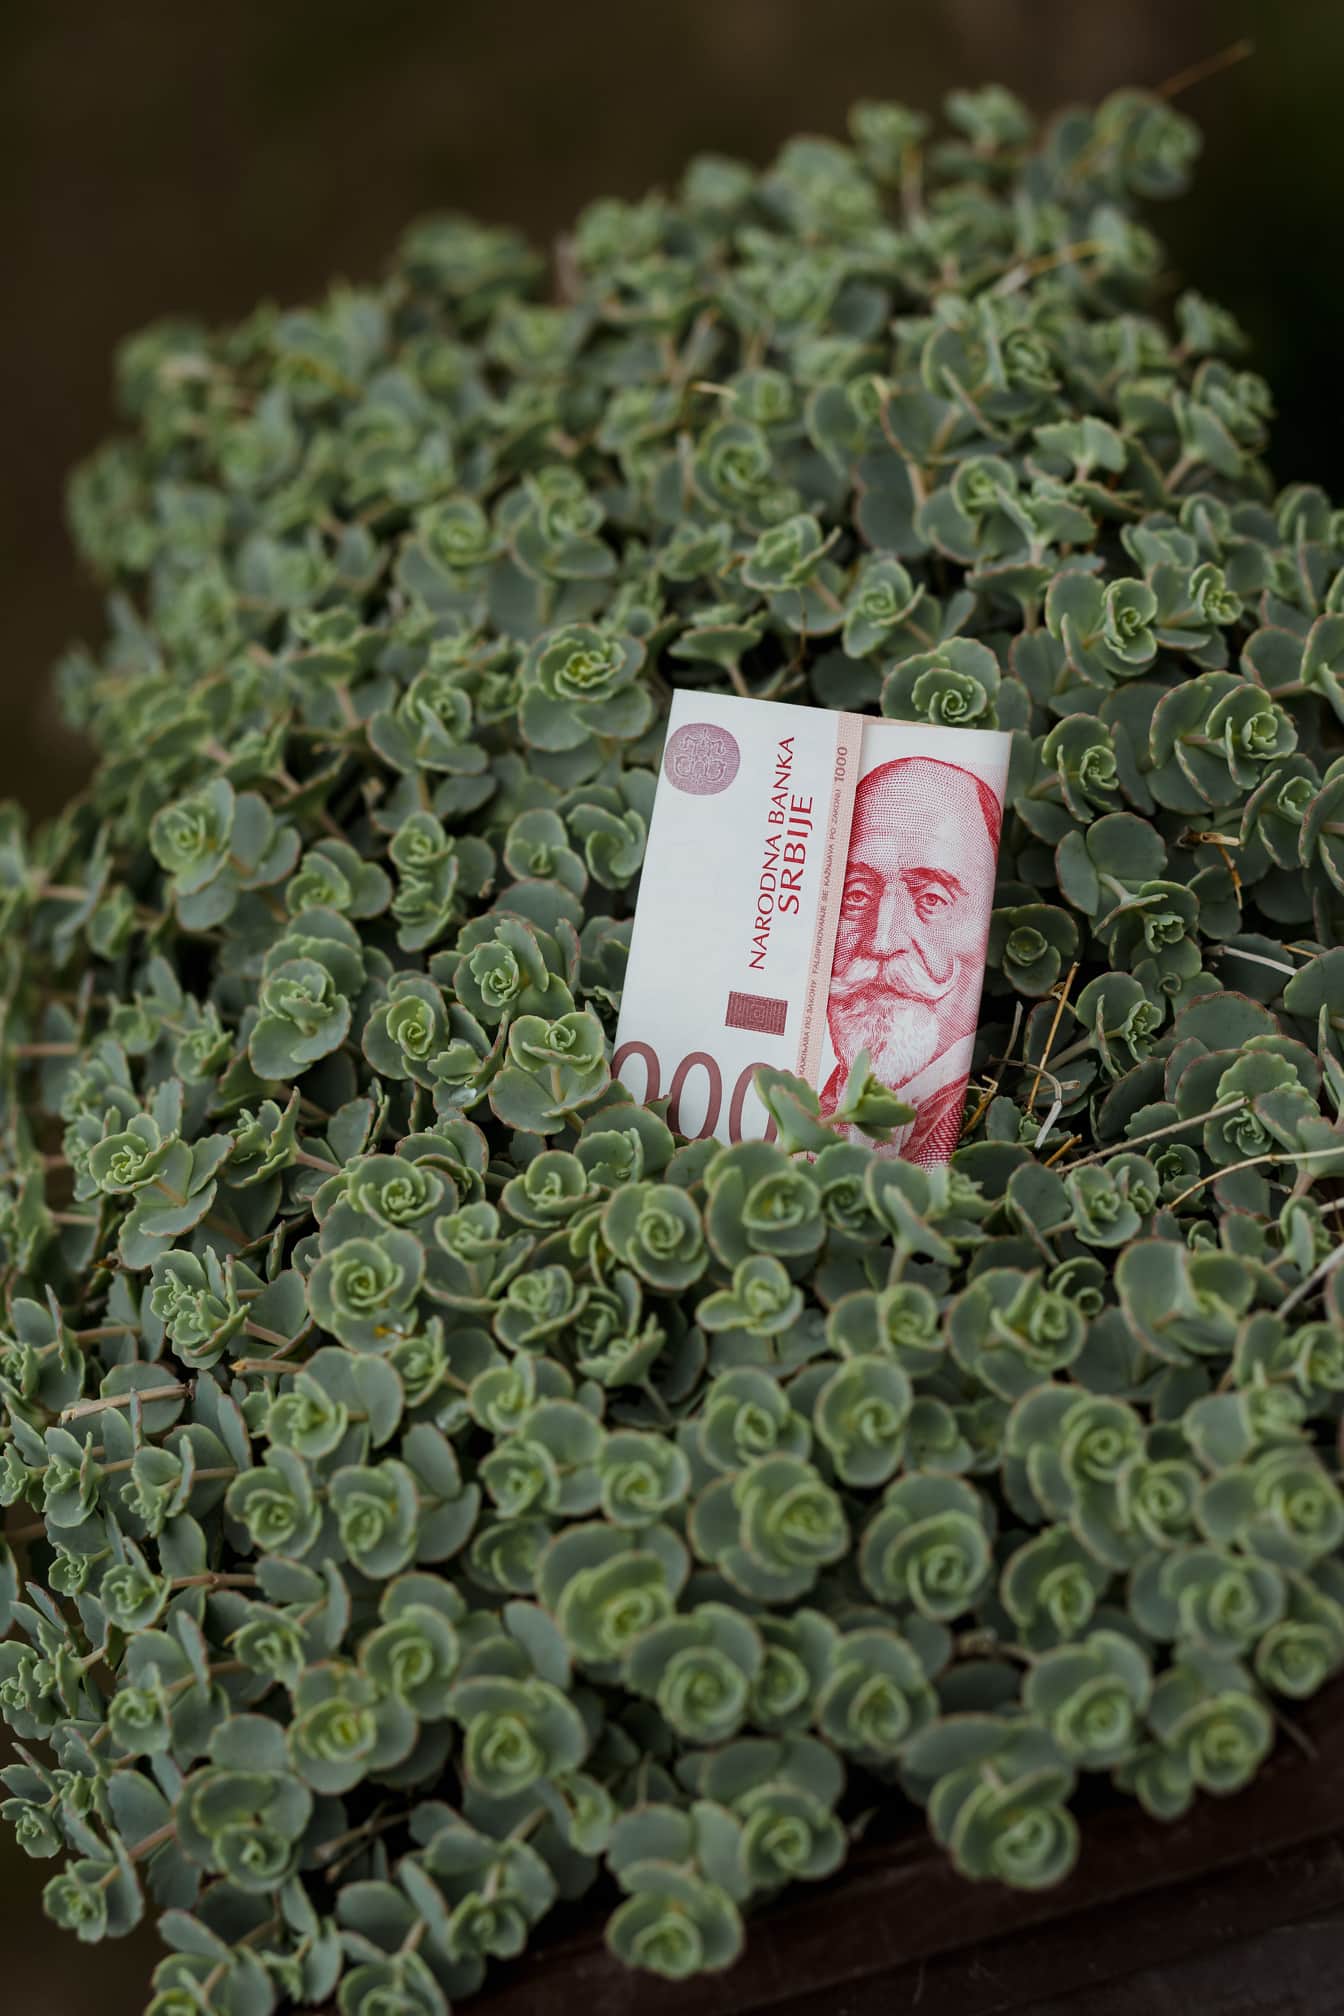 1000 dinarów serbskich Narodowego Banku Serbii na zielonych liściach